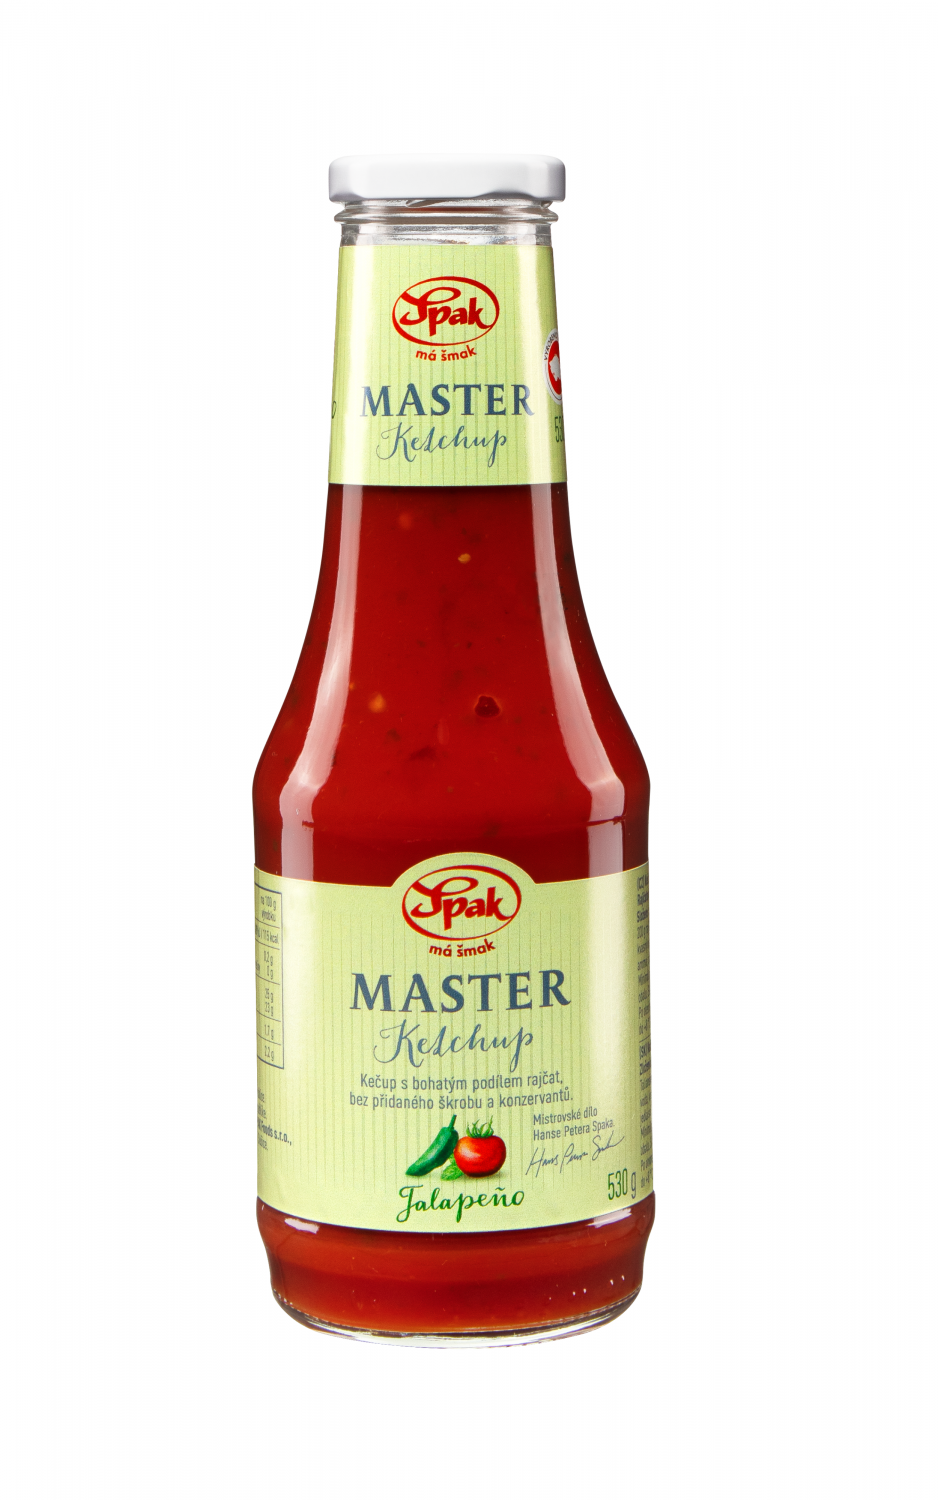 Ketchup-Master-Jalapeno-530-g